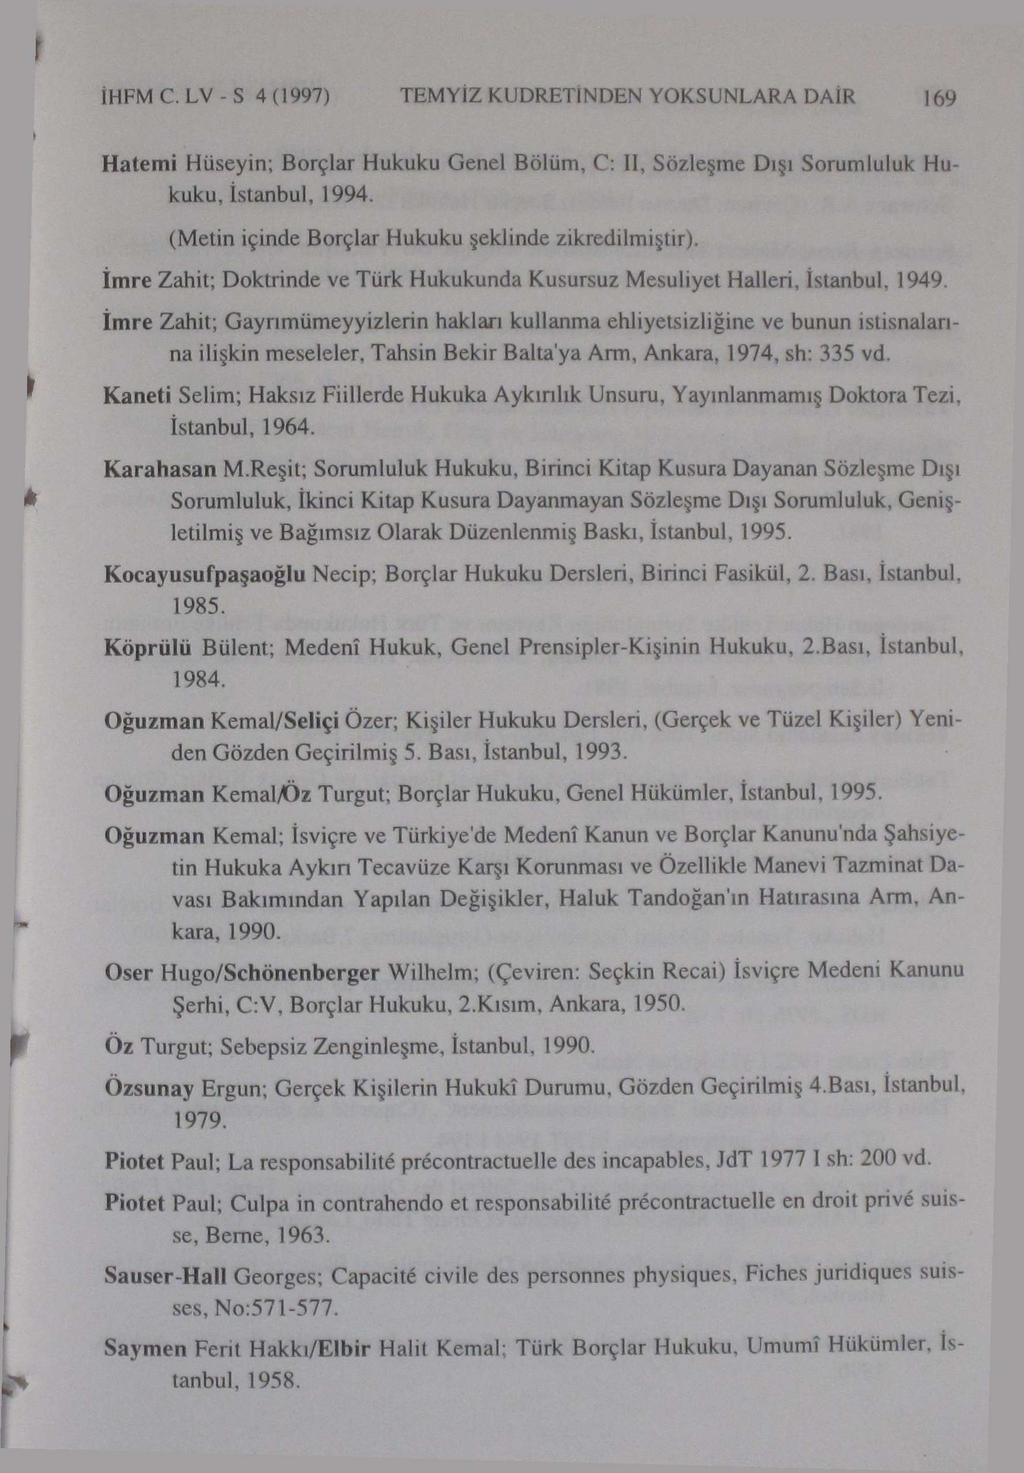 1HFMC.LV-S 4(1997) TEMYİZ KUDRETİNDEN YOKSUNLARA DAİR 169 Hatemi Hüseyin; Borçlar Hukuku Genel Bölüm, C: II, Sözleşme Dışı Sorumluluk Hukuku, İstanbul, 1994.